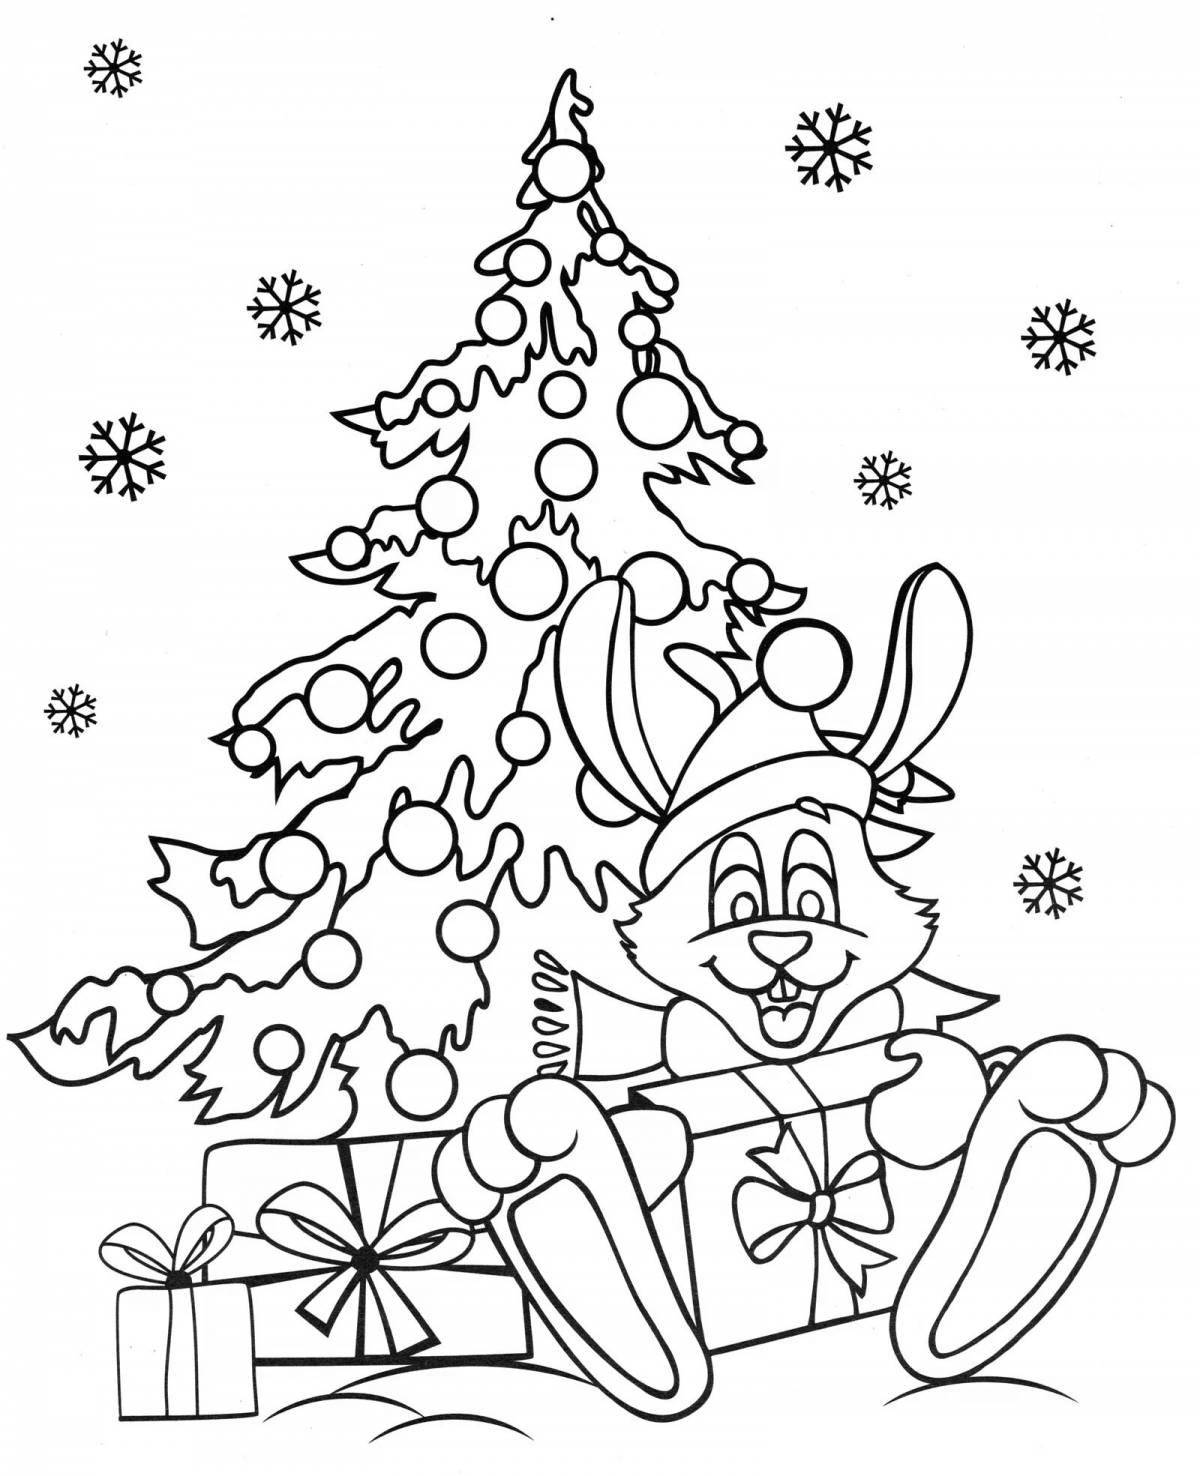 Magic santa claus and bunny coloring book